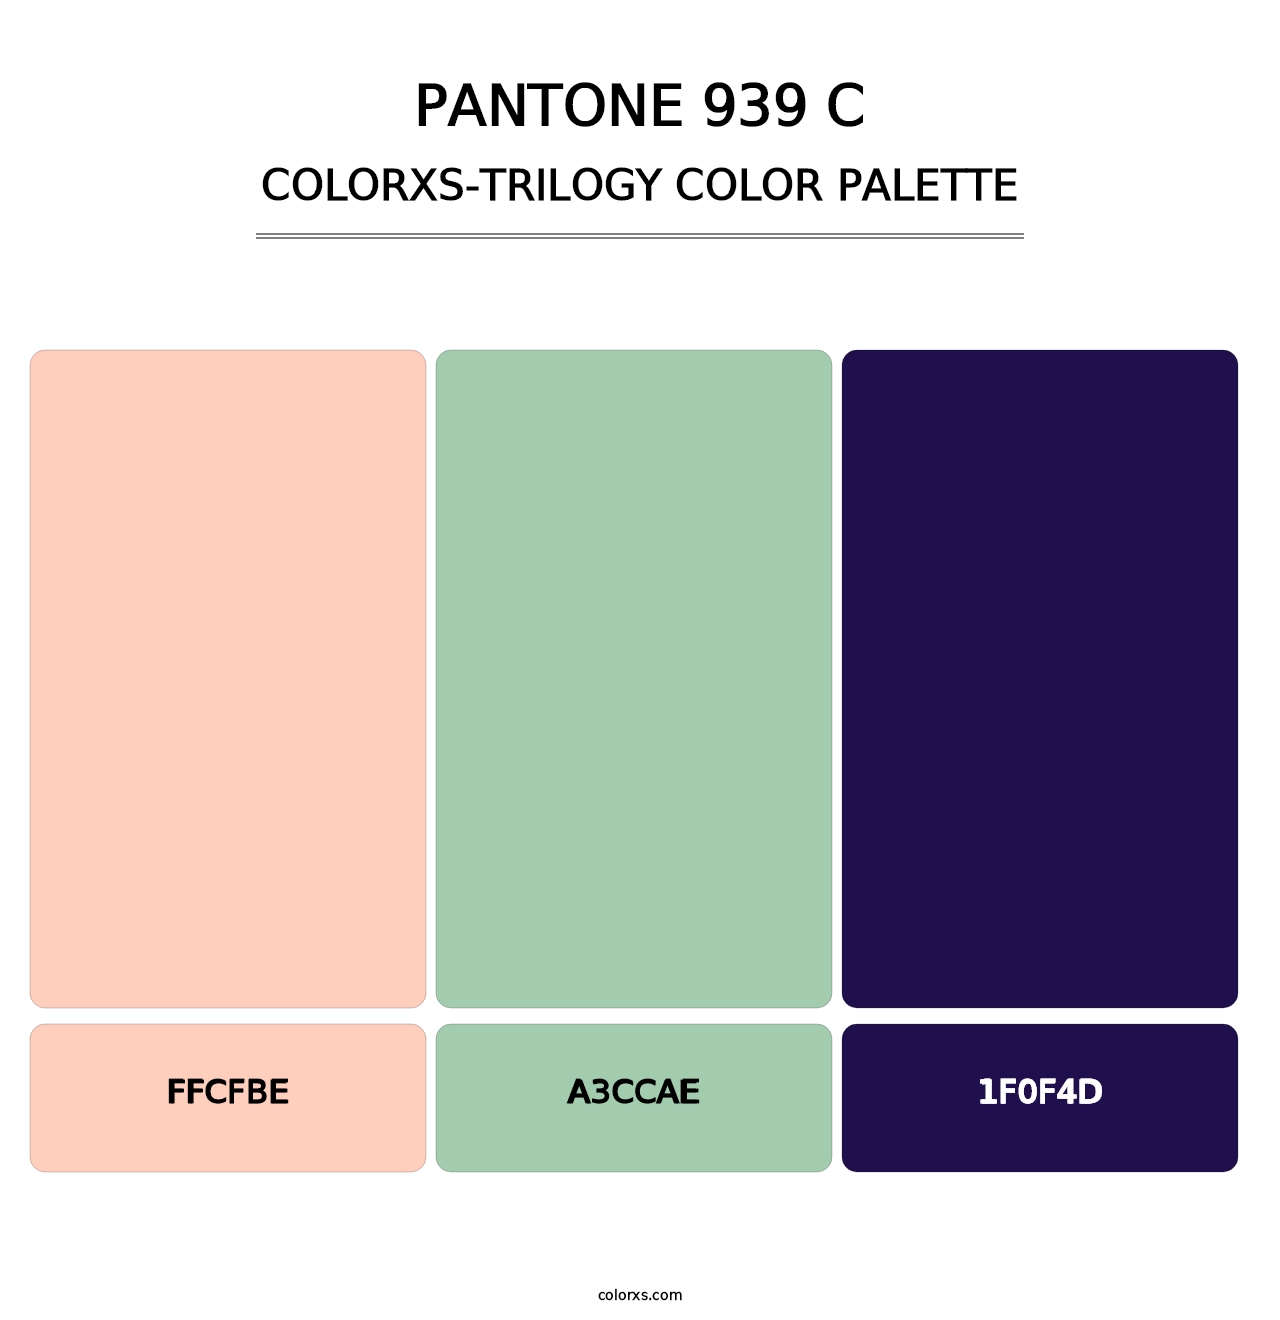 PANTONE 939 C - Colorxs Trilogy Palette